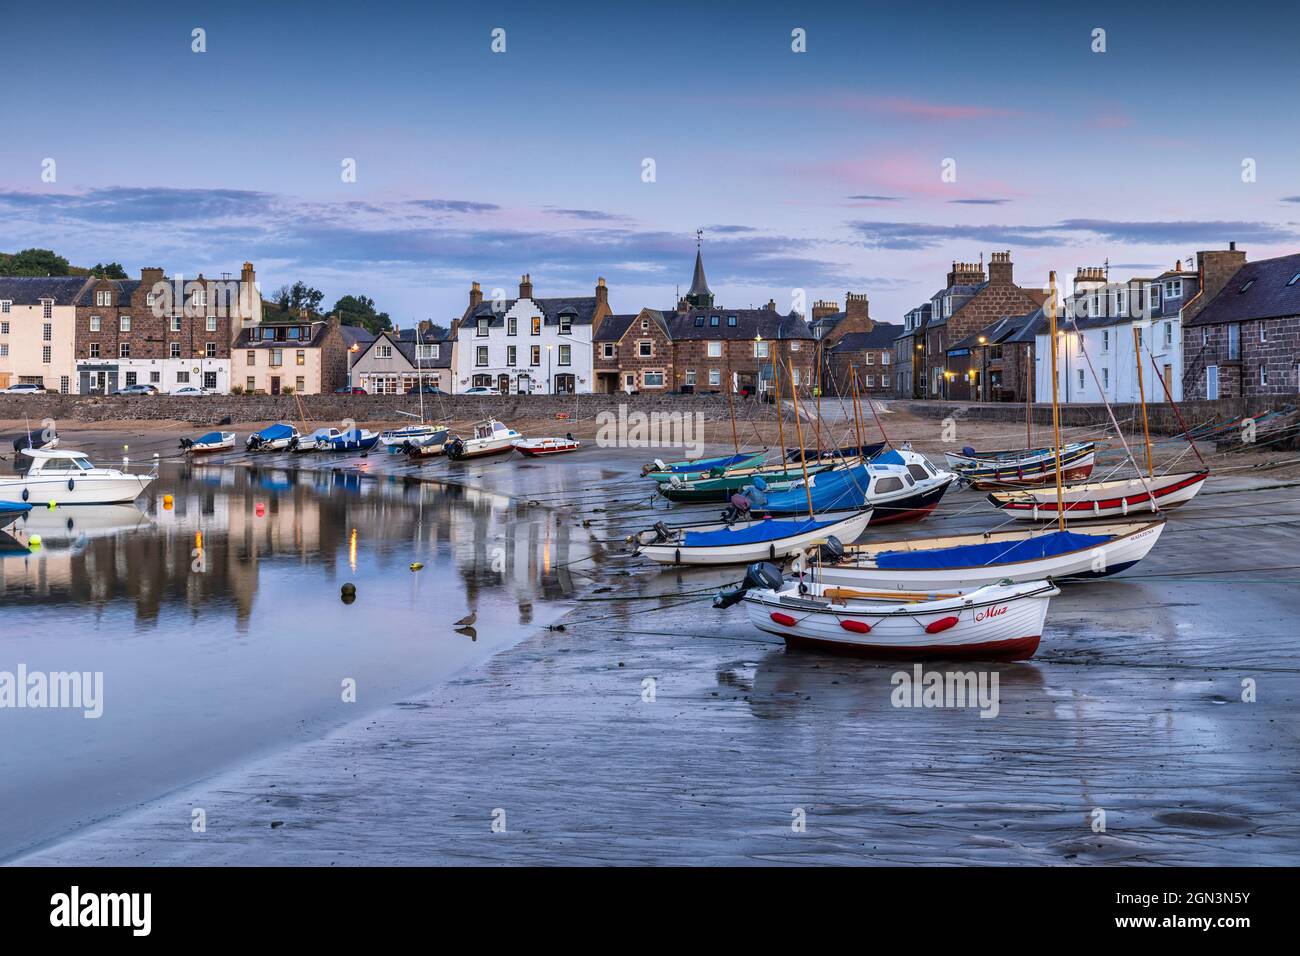 Al mattino presto a Stonehaven, una pittoresca cittadina portuale nell'Aberdeenshire situata a sud di Aberdeen, sulla costa nord-orientale della Scozia. Foto Stock